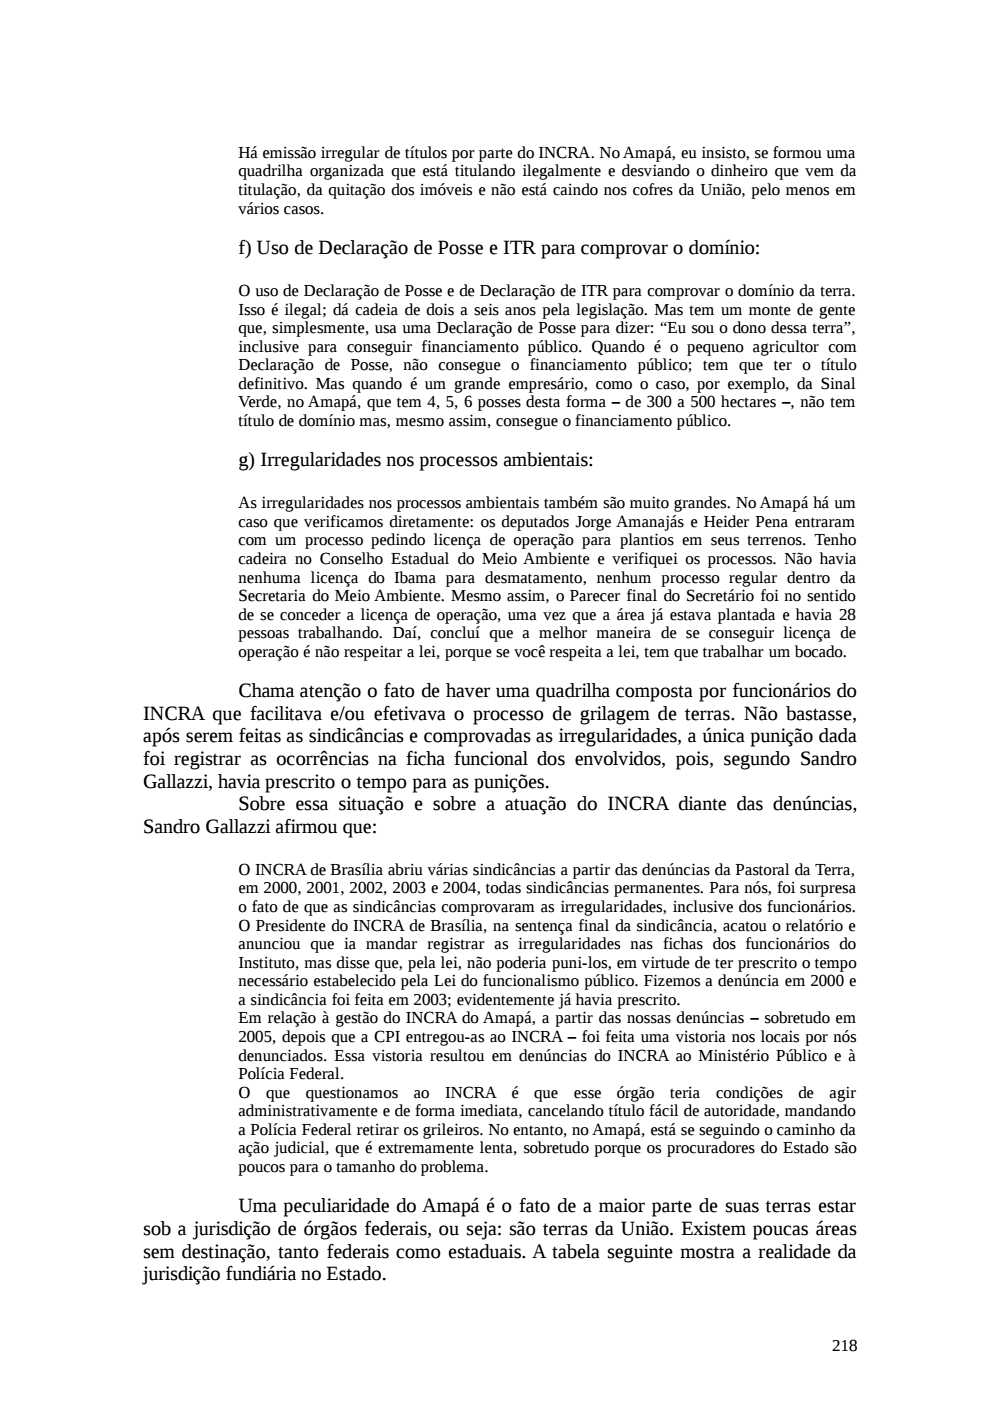 Page 218 from Relatório final da comissão